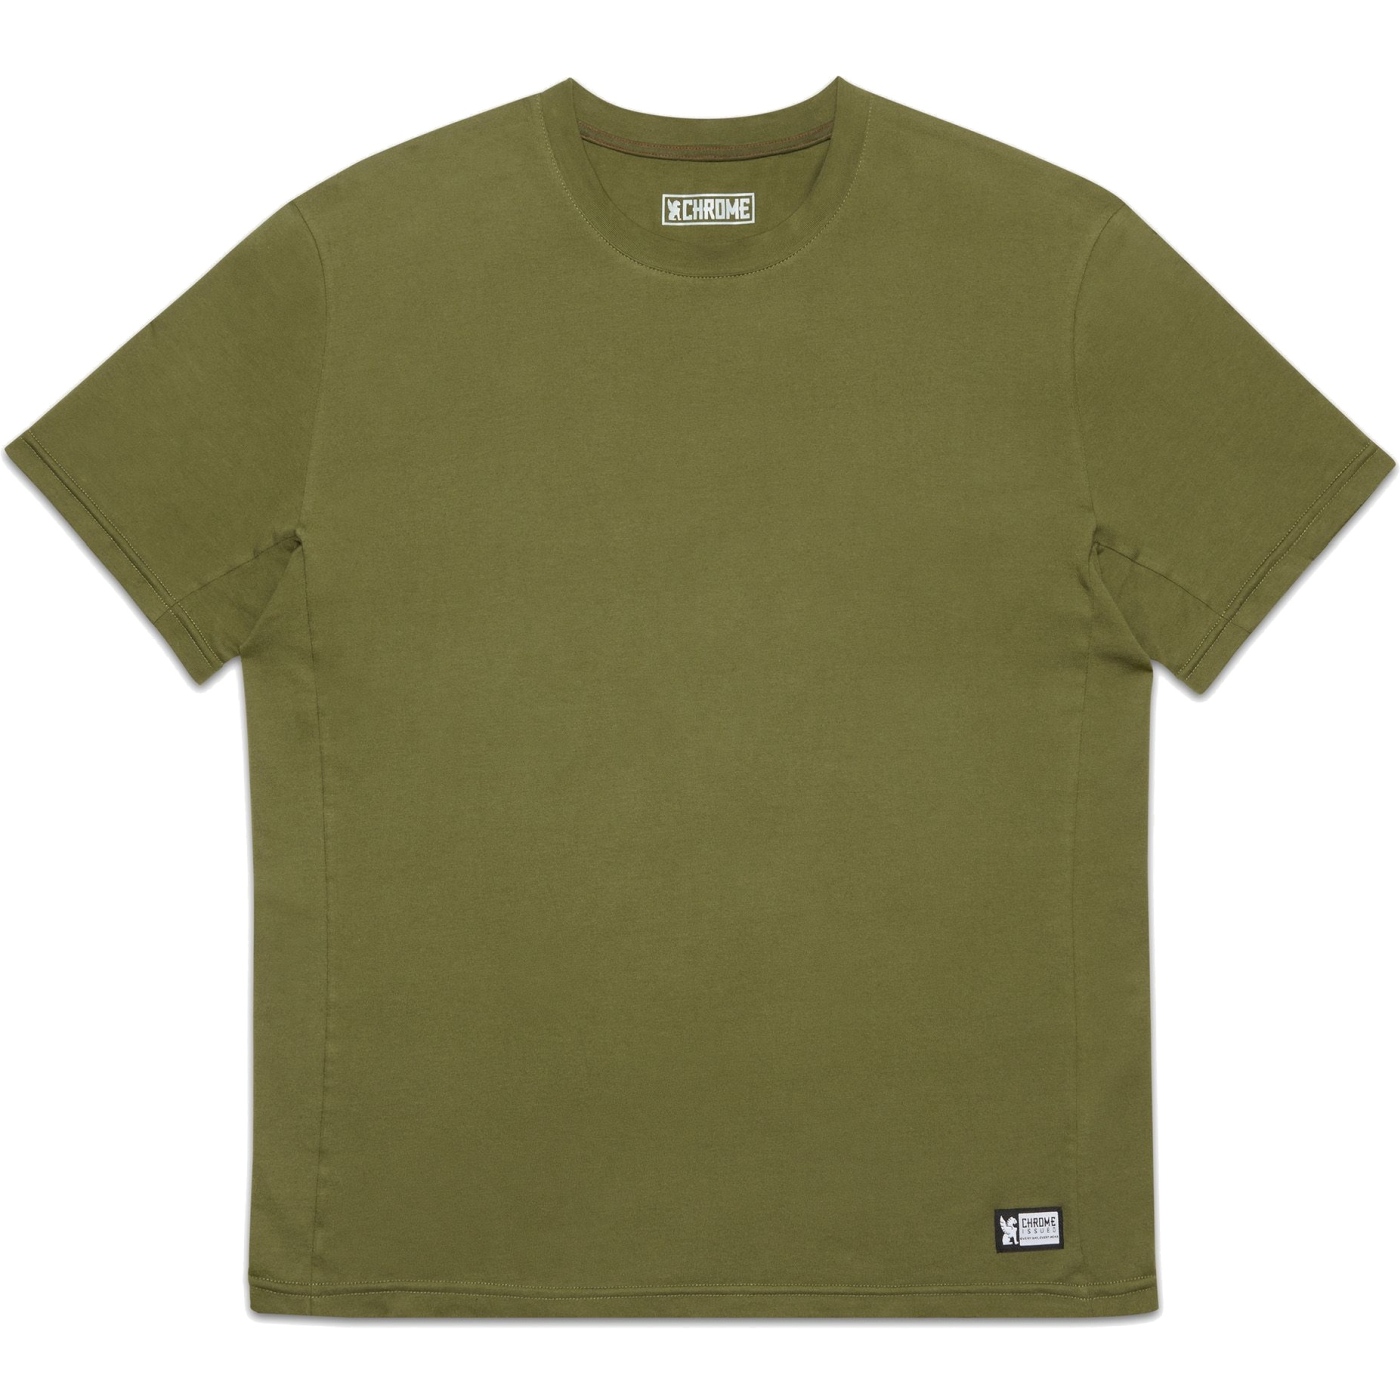 Bild von CHROME Issued Short Sleeve Tee T-Shirt - Olive Branch